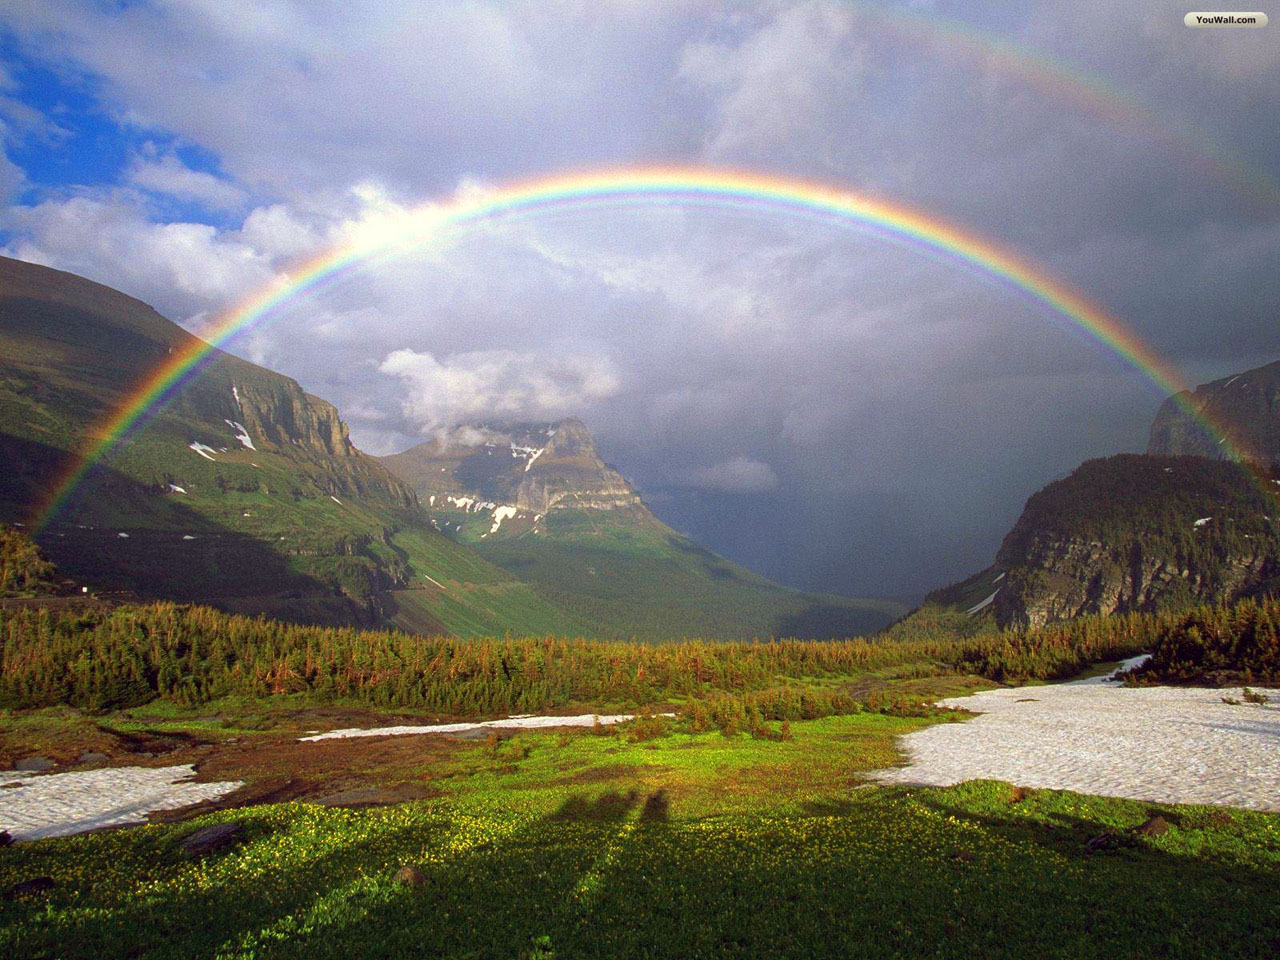 Résultat de recherche d'images pour "beautiful rainbow"